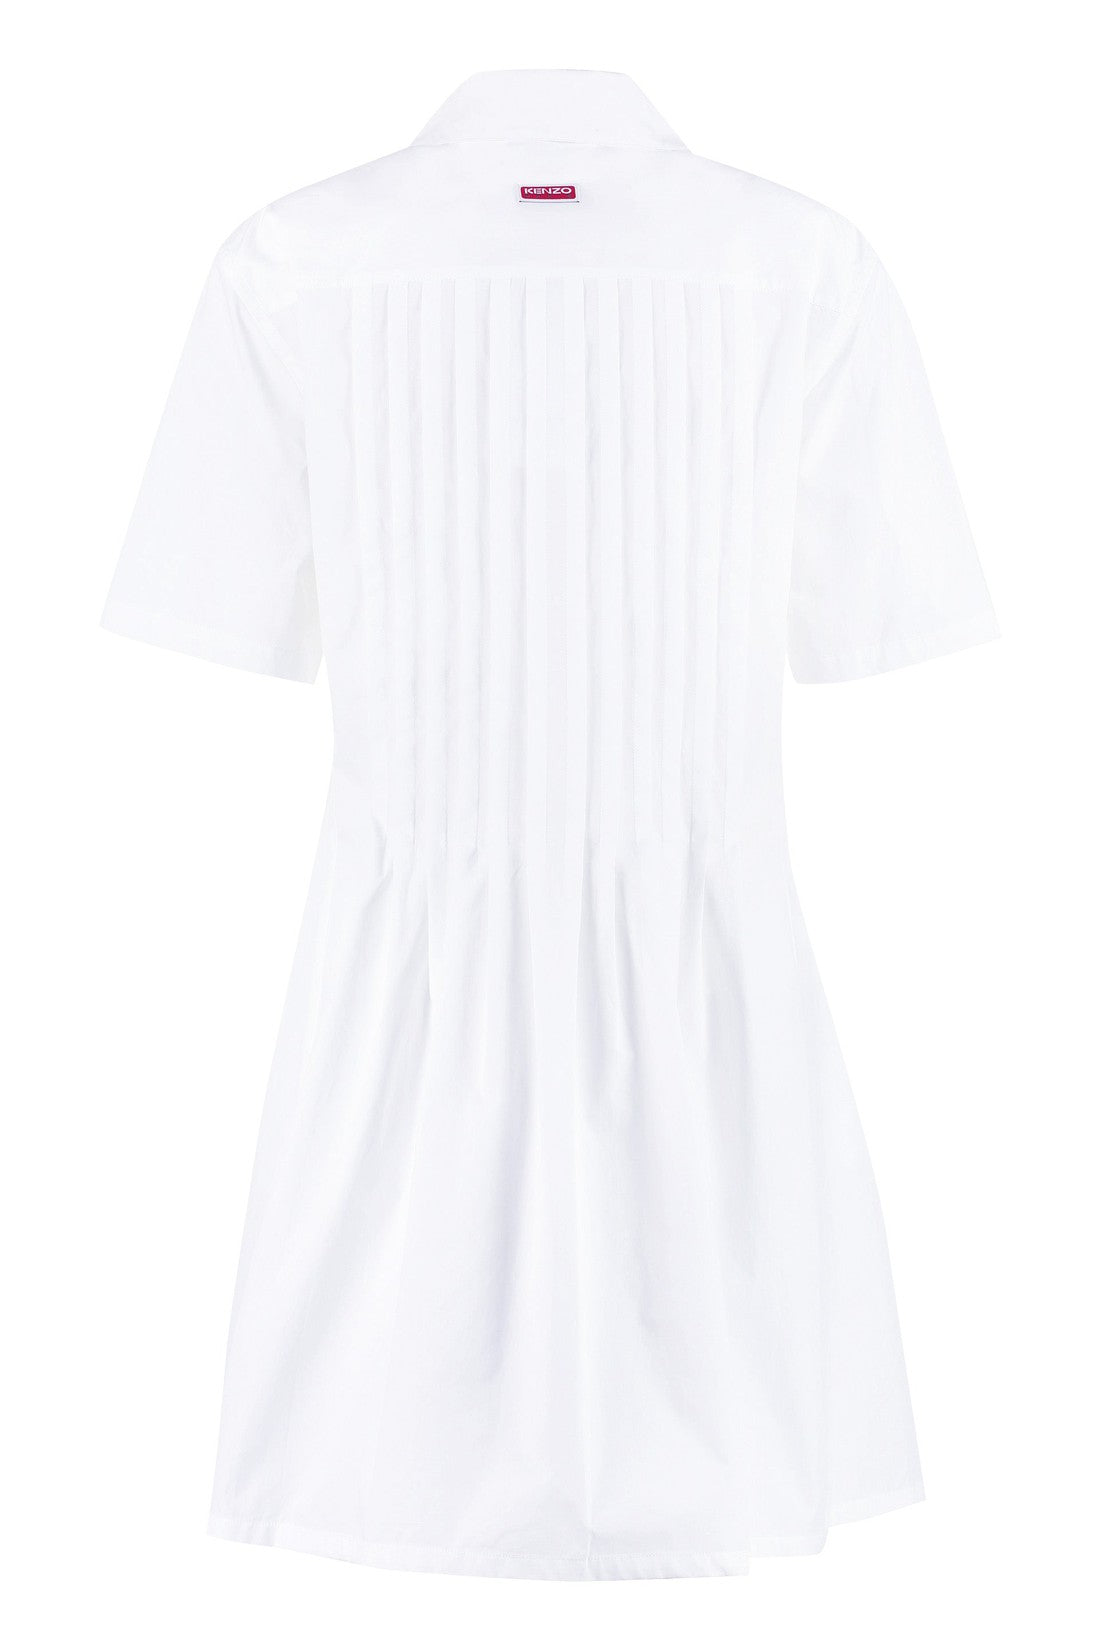 Kenzo-OUTLET-SALE-Cotton shirtdress-ARCHIVIST